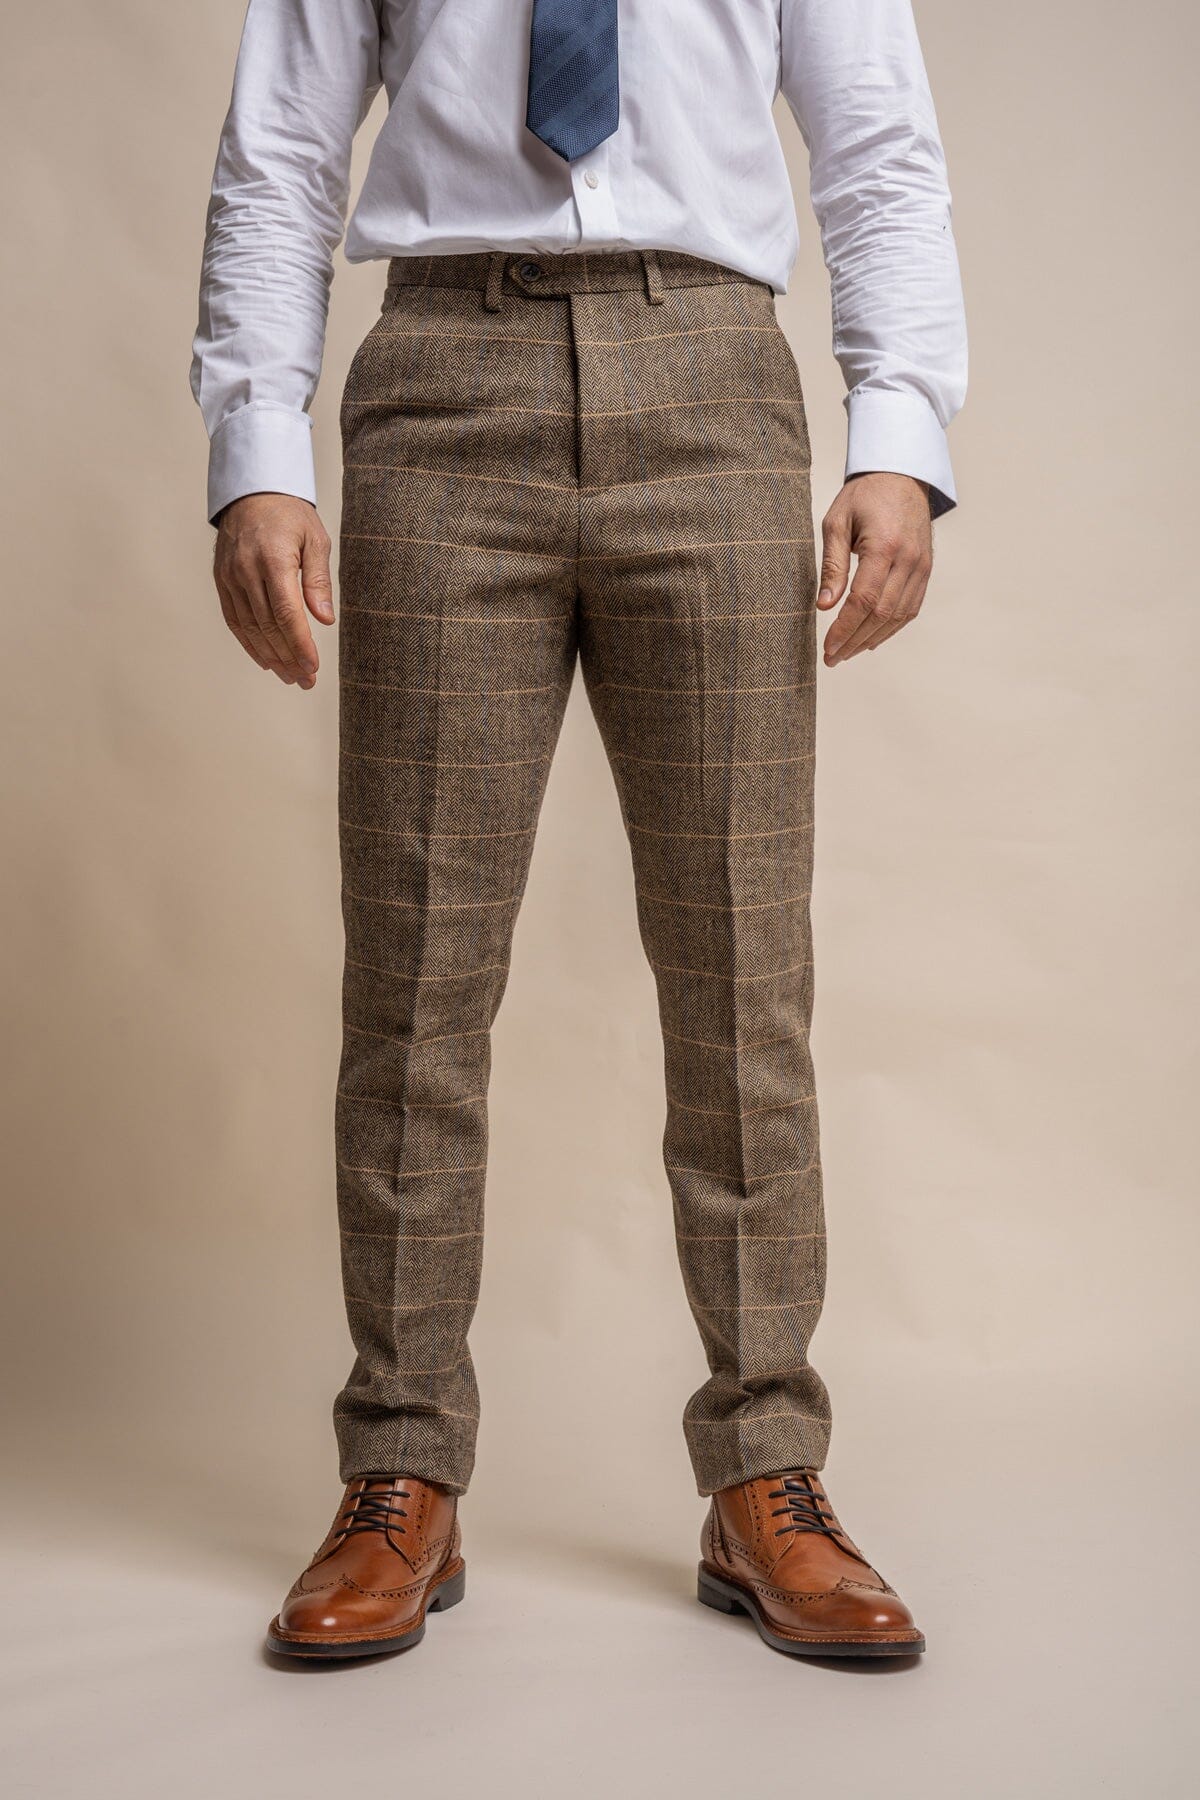 Albert Brown Tweed 2 Piece Suit - Suits - 